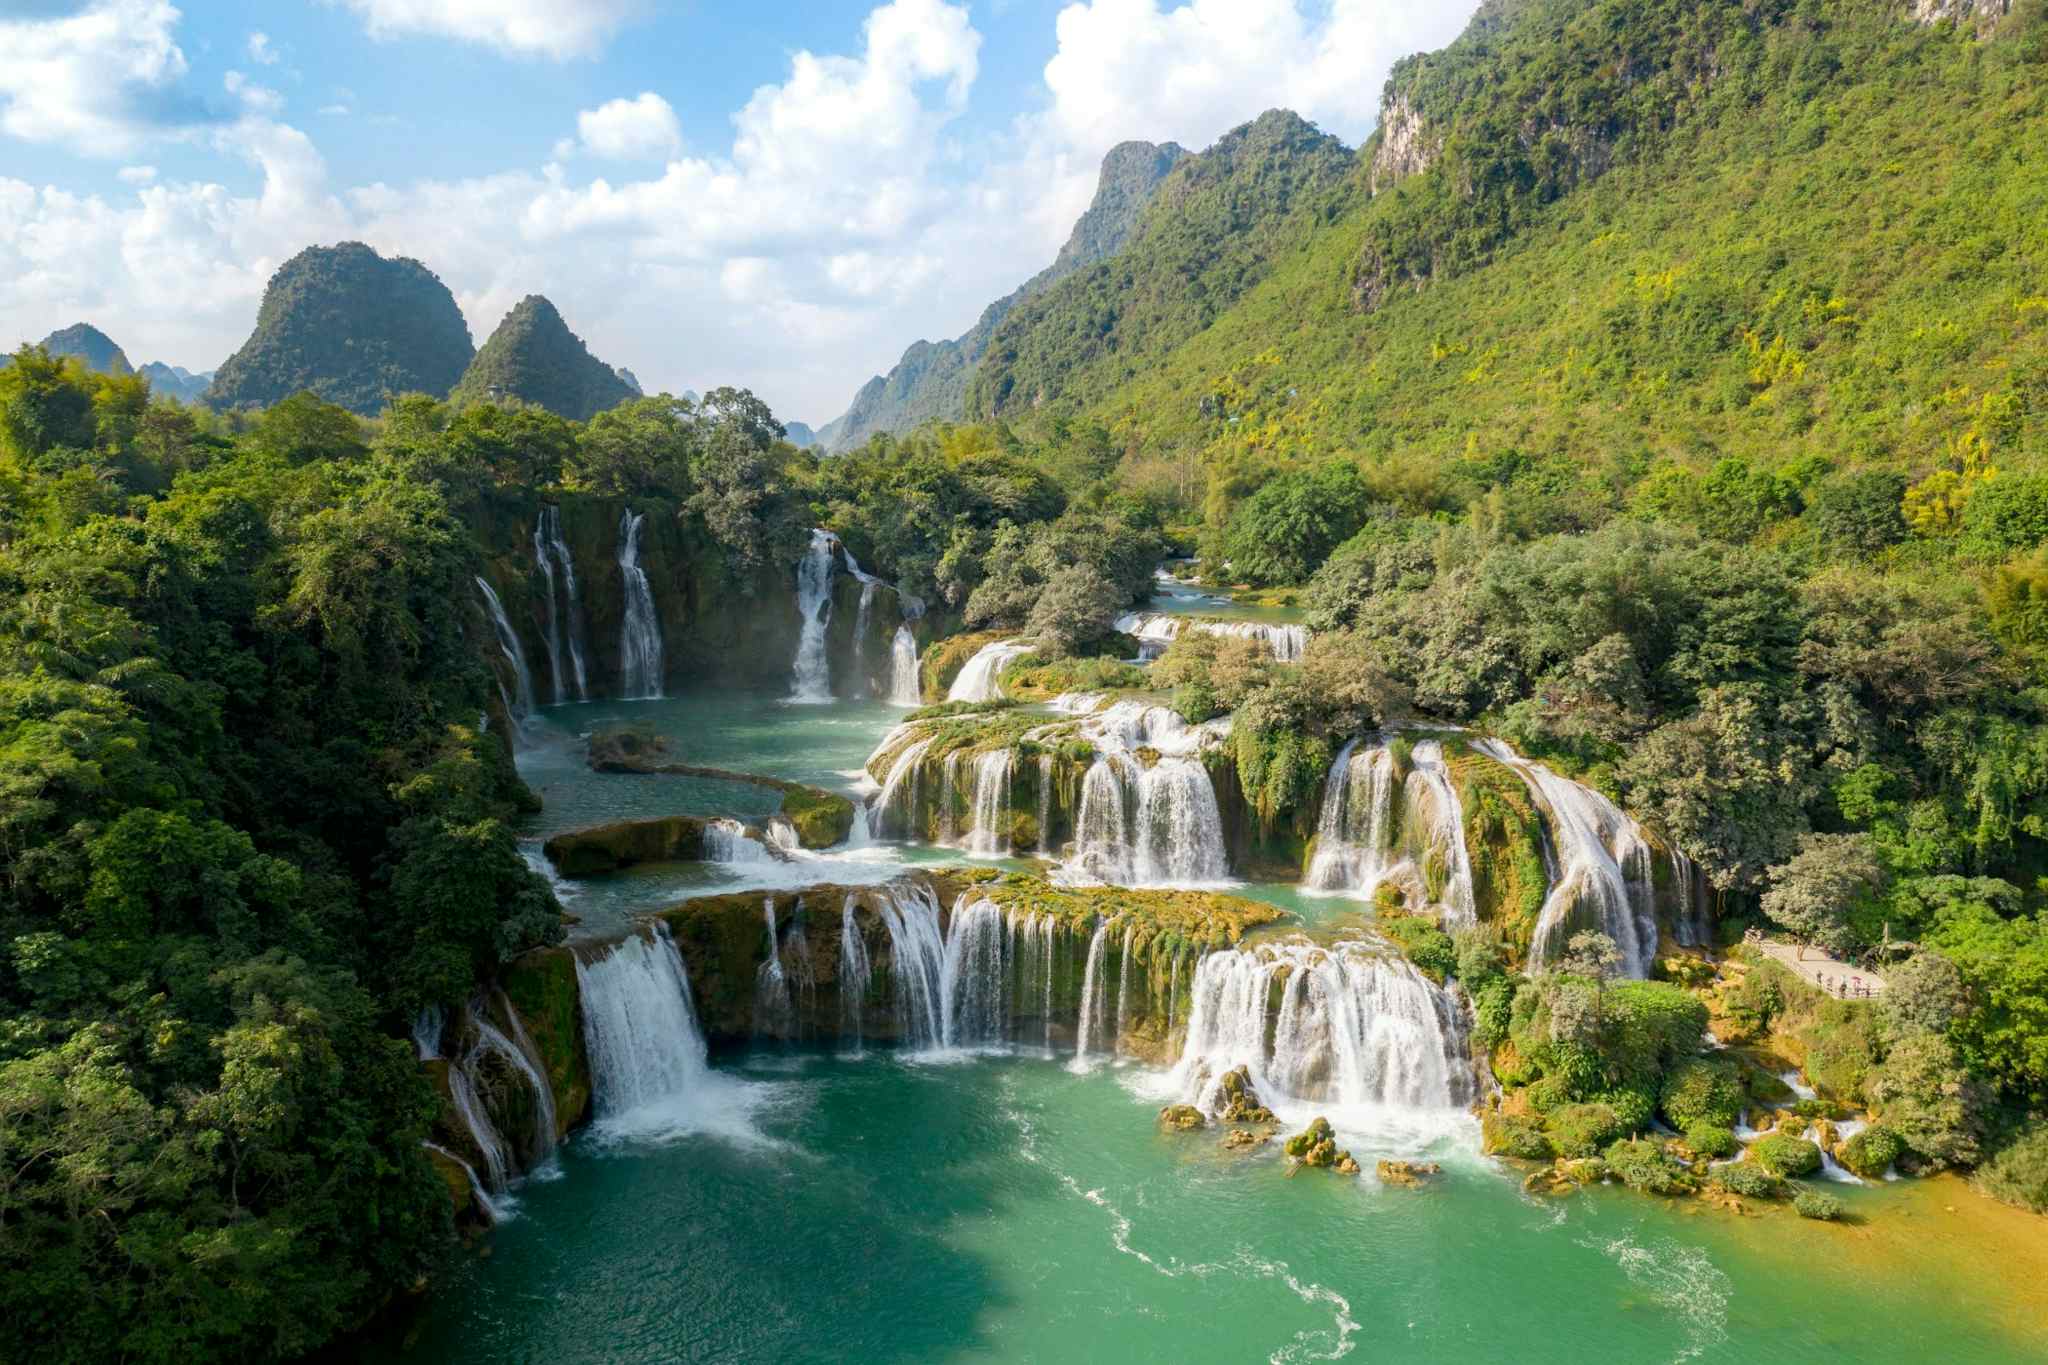 CANVA - Ban Gioc Falls, Vietnam. Photo: Canva link: https://www.canva.com/photos/MADUt515VEk-the-falls-of-ban-gioc/
